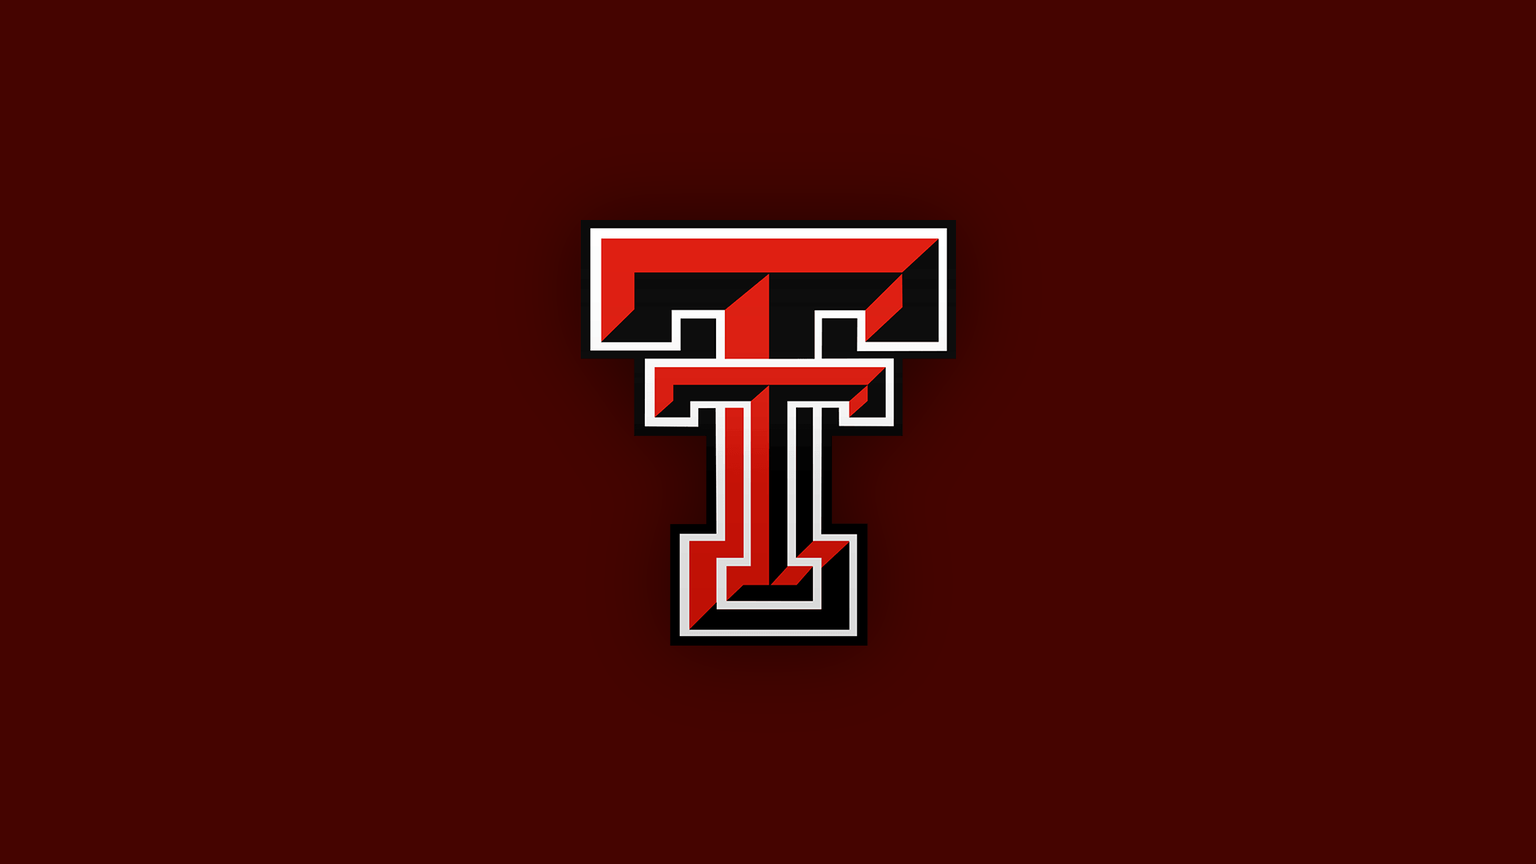 Texas Tech Red Raiders Banner 1536x864 Crop 